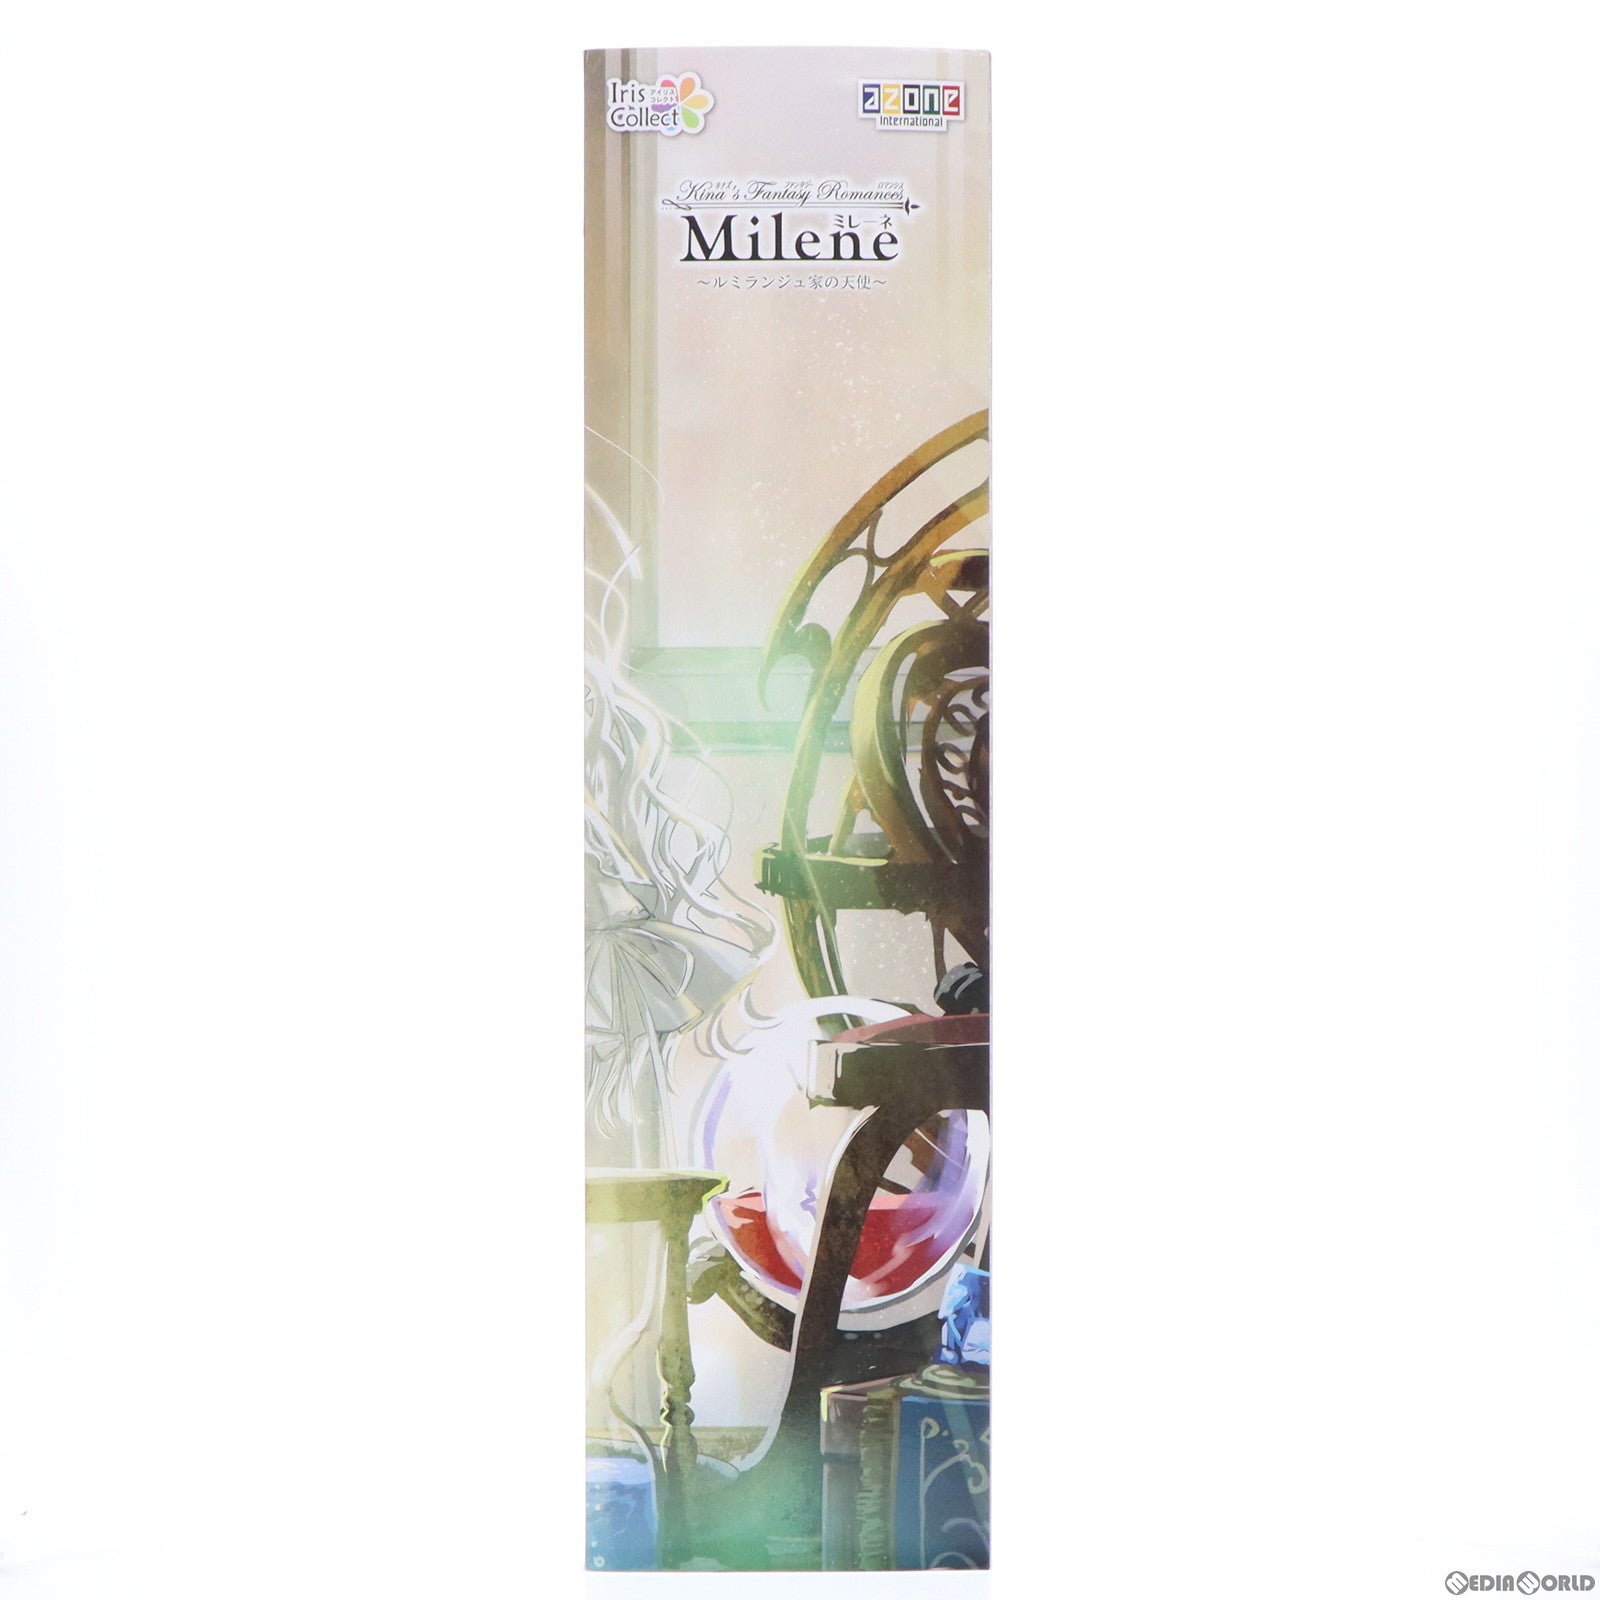 【中古即納】[DOL]Iris Collect(アイリス コレクト) ミレーネ/『Kina's Fantasy Romances』〜ルミランジュ家の天使〜 1/3 完成品 ドール(AOD521-MLA) アゾン(20210710)